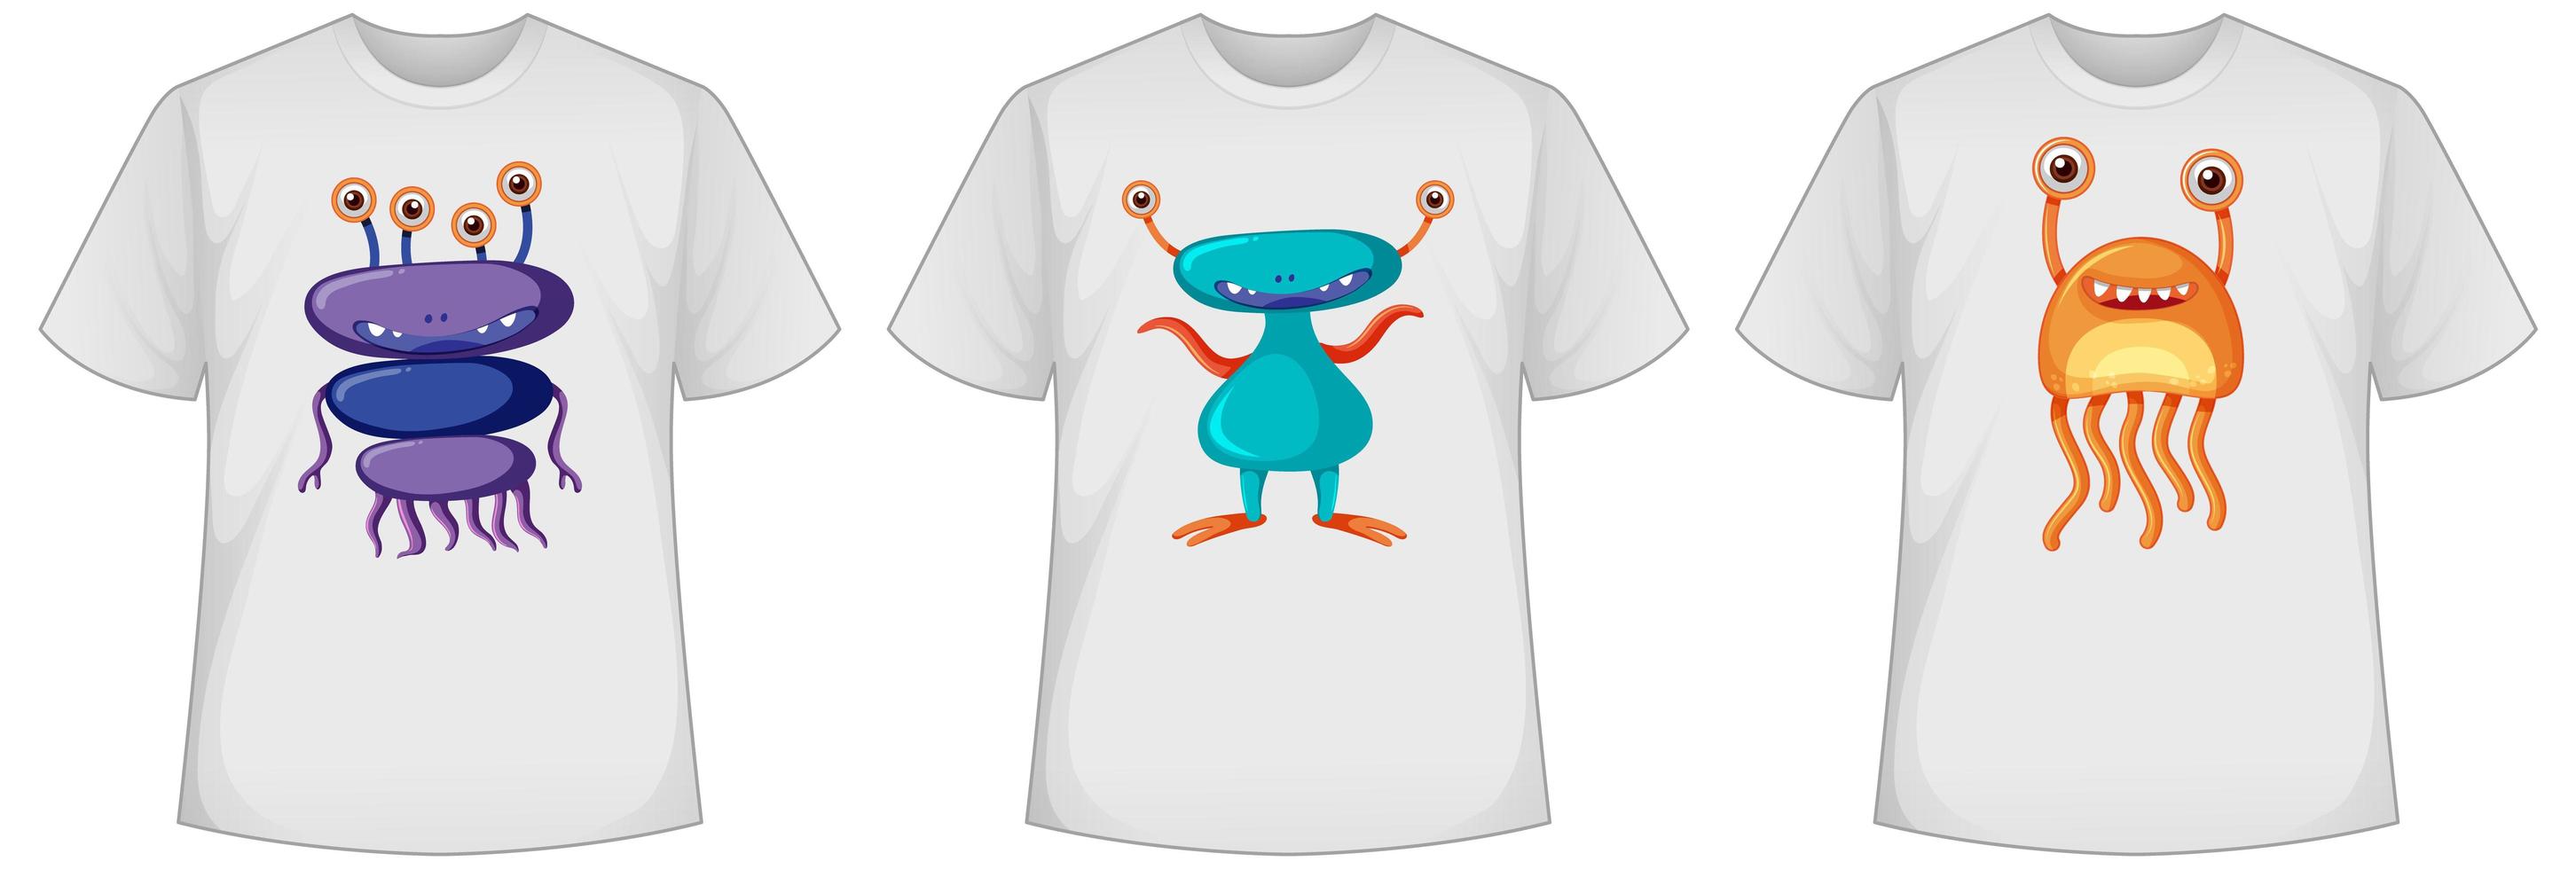 conjunto de monstros fofos de cores diferentes ou telas de alienígenas em camisetas vetor